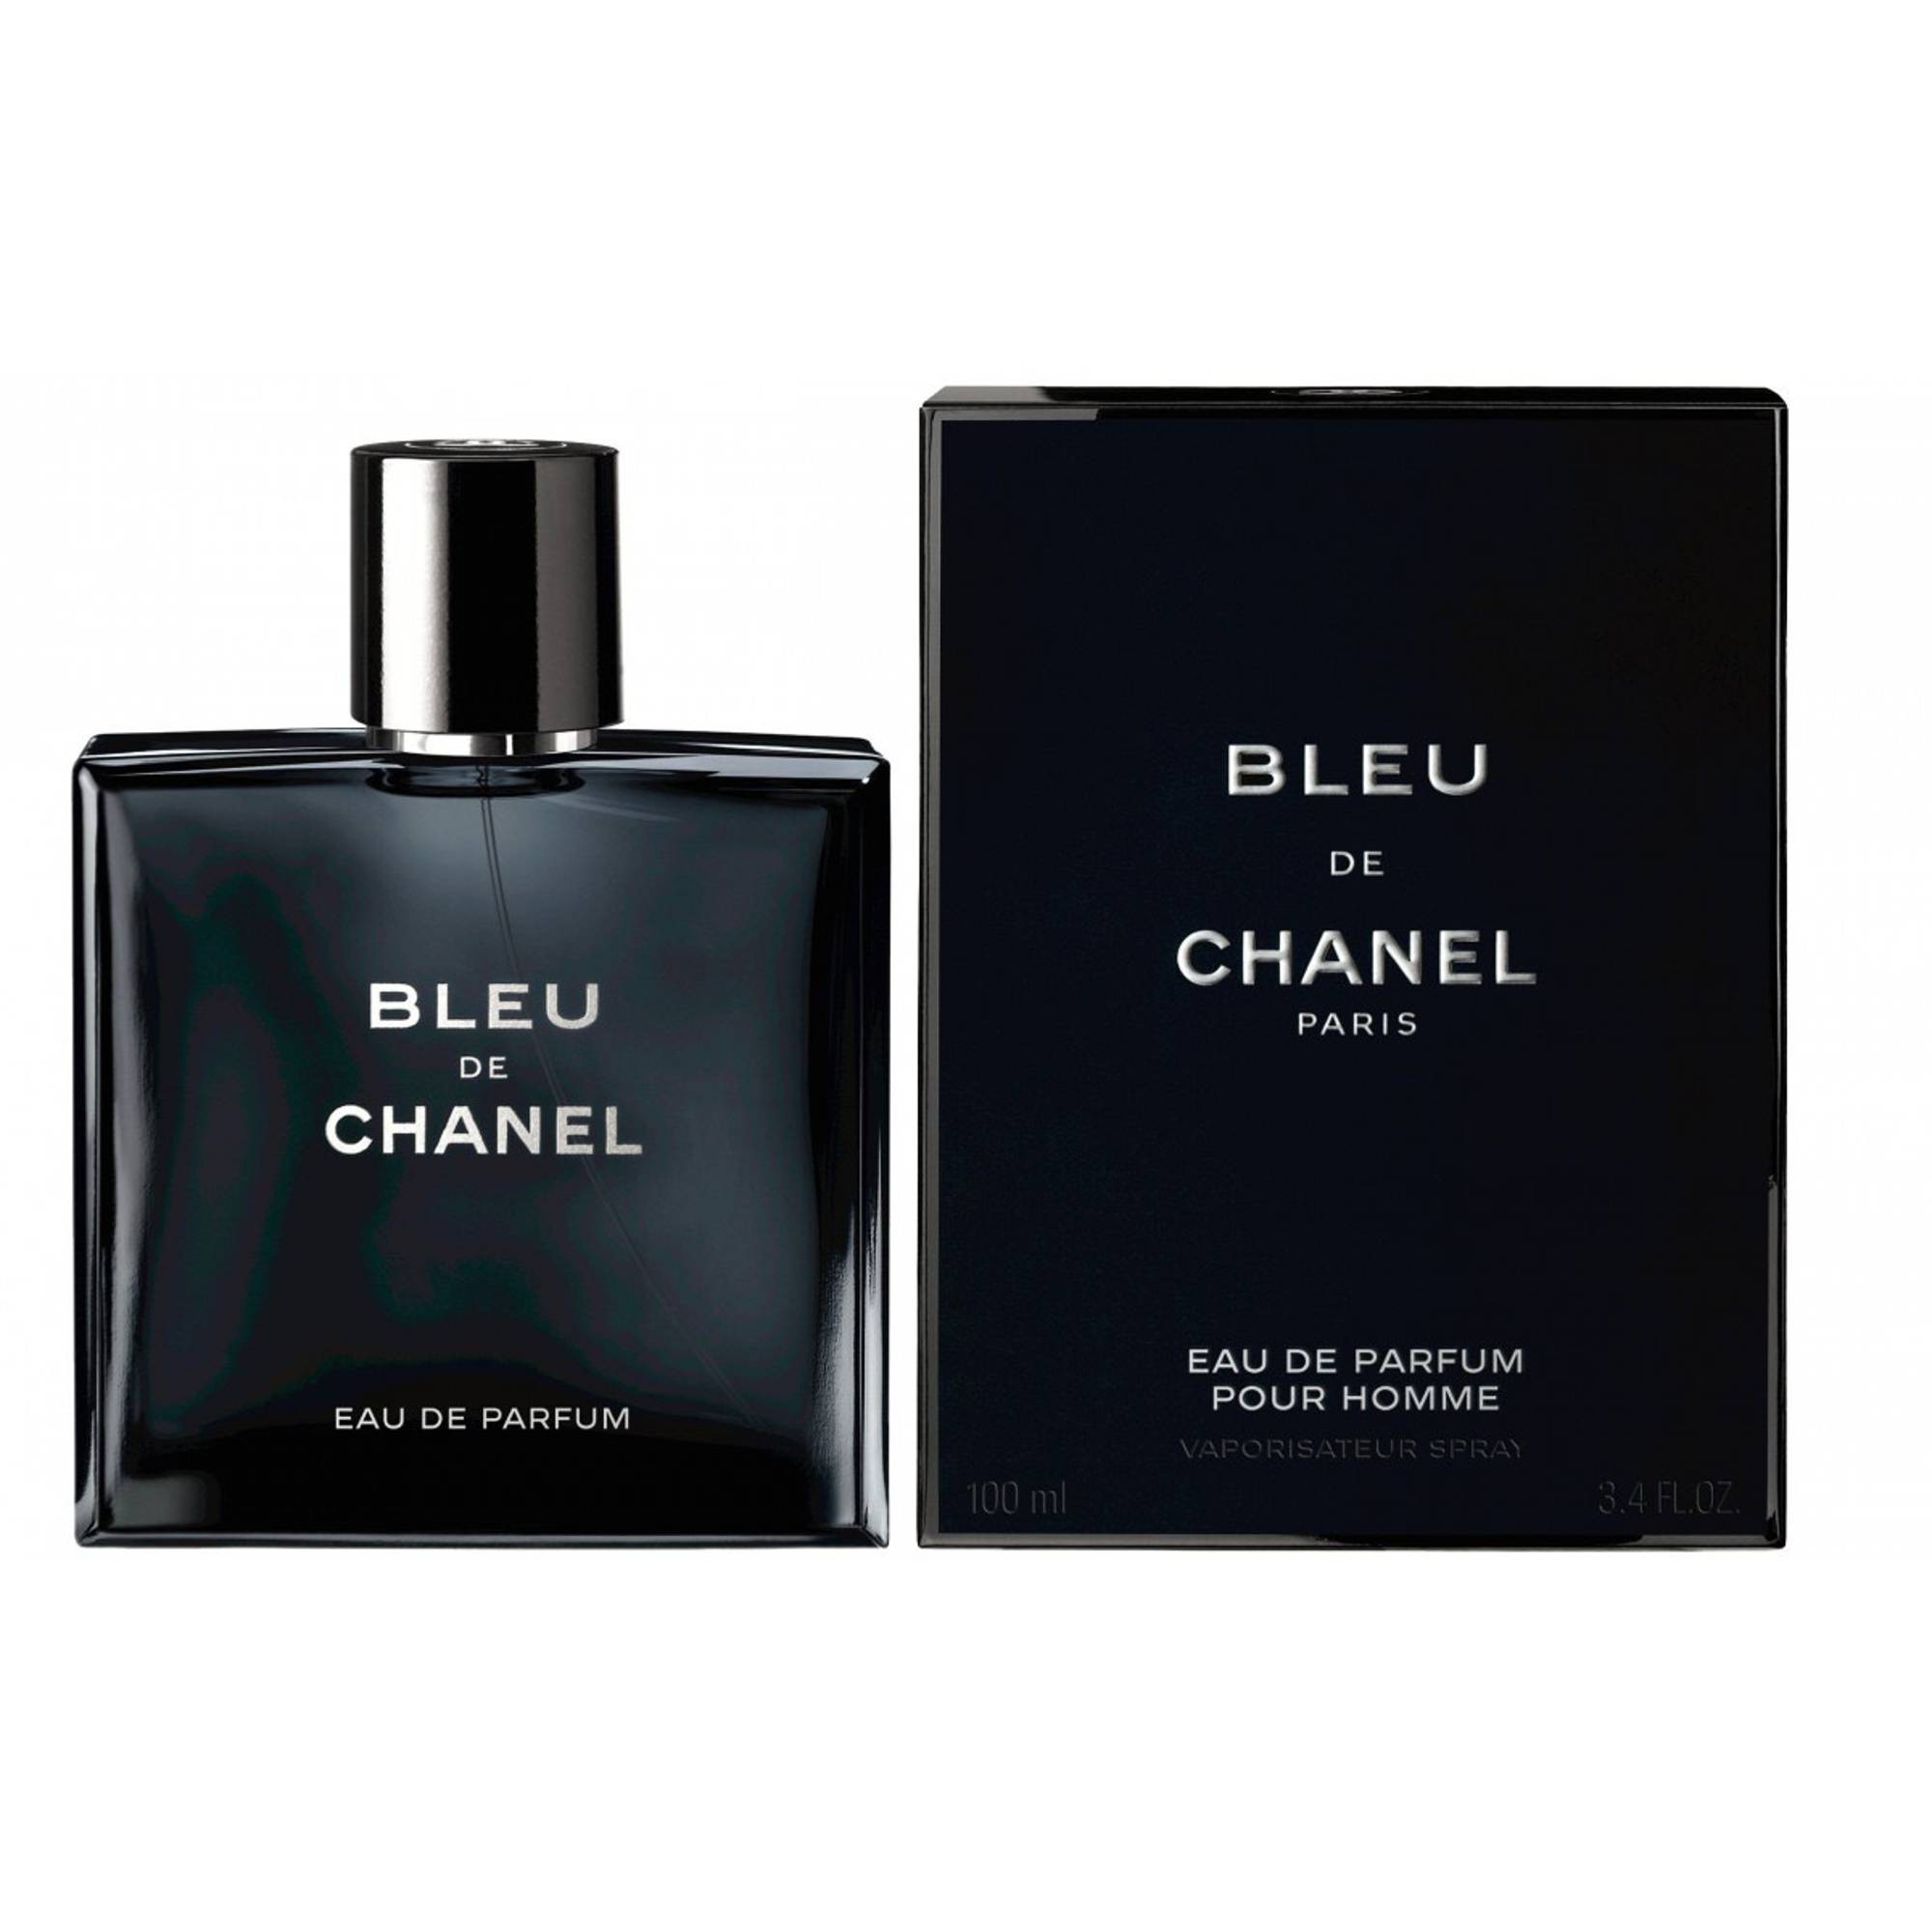 Chanel bleu de chanel eau de parfum